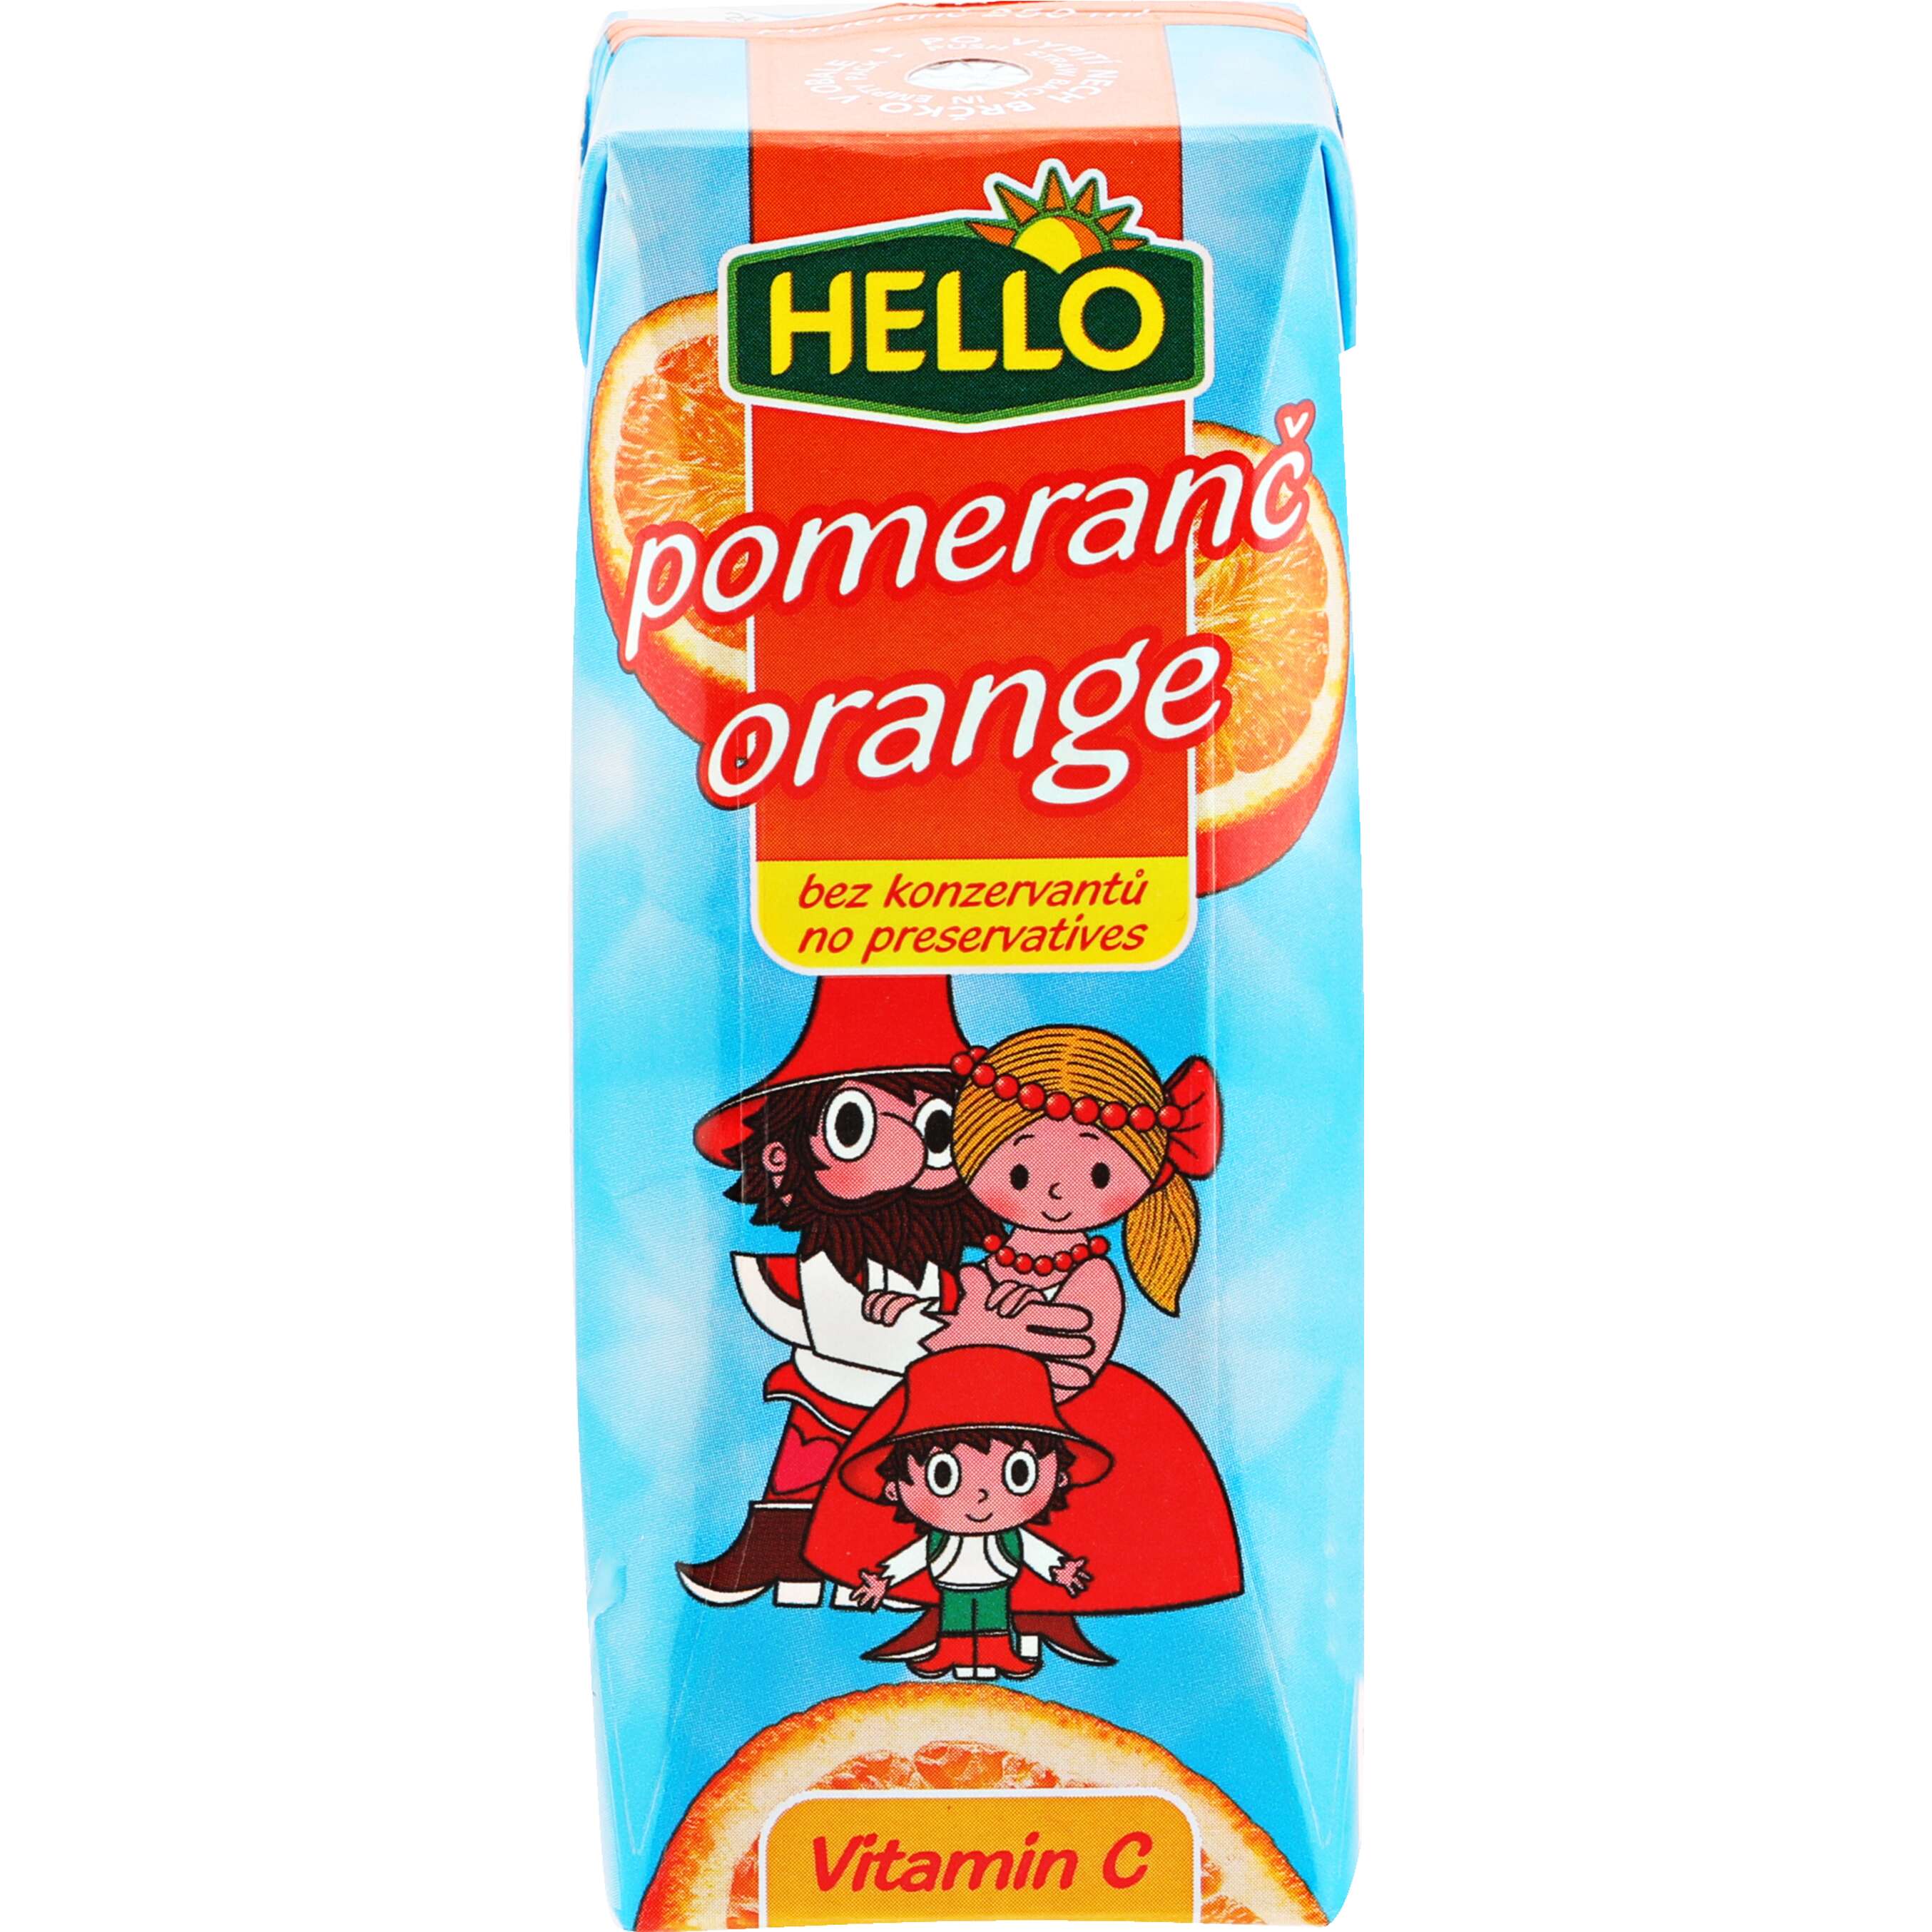 Zobrazit nabídku Hello mini drink Ovocný nápoj pomeranč/lesní jahoda